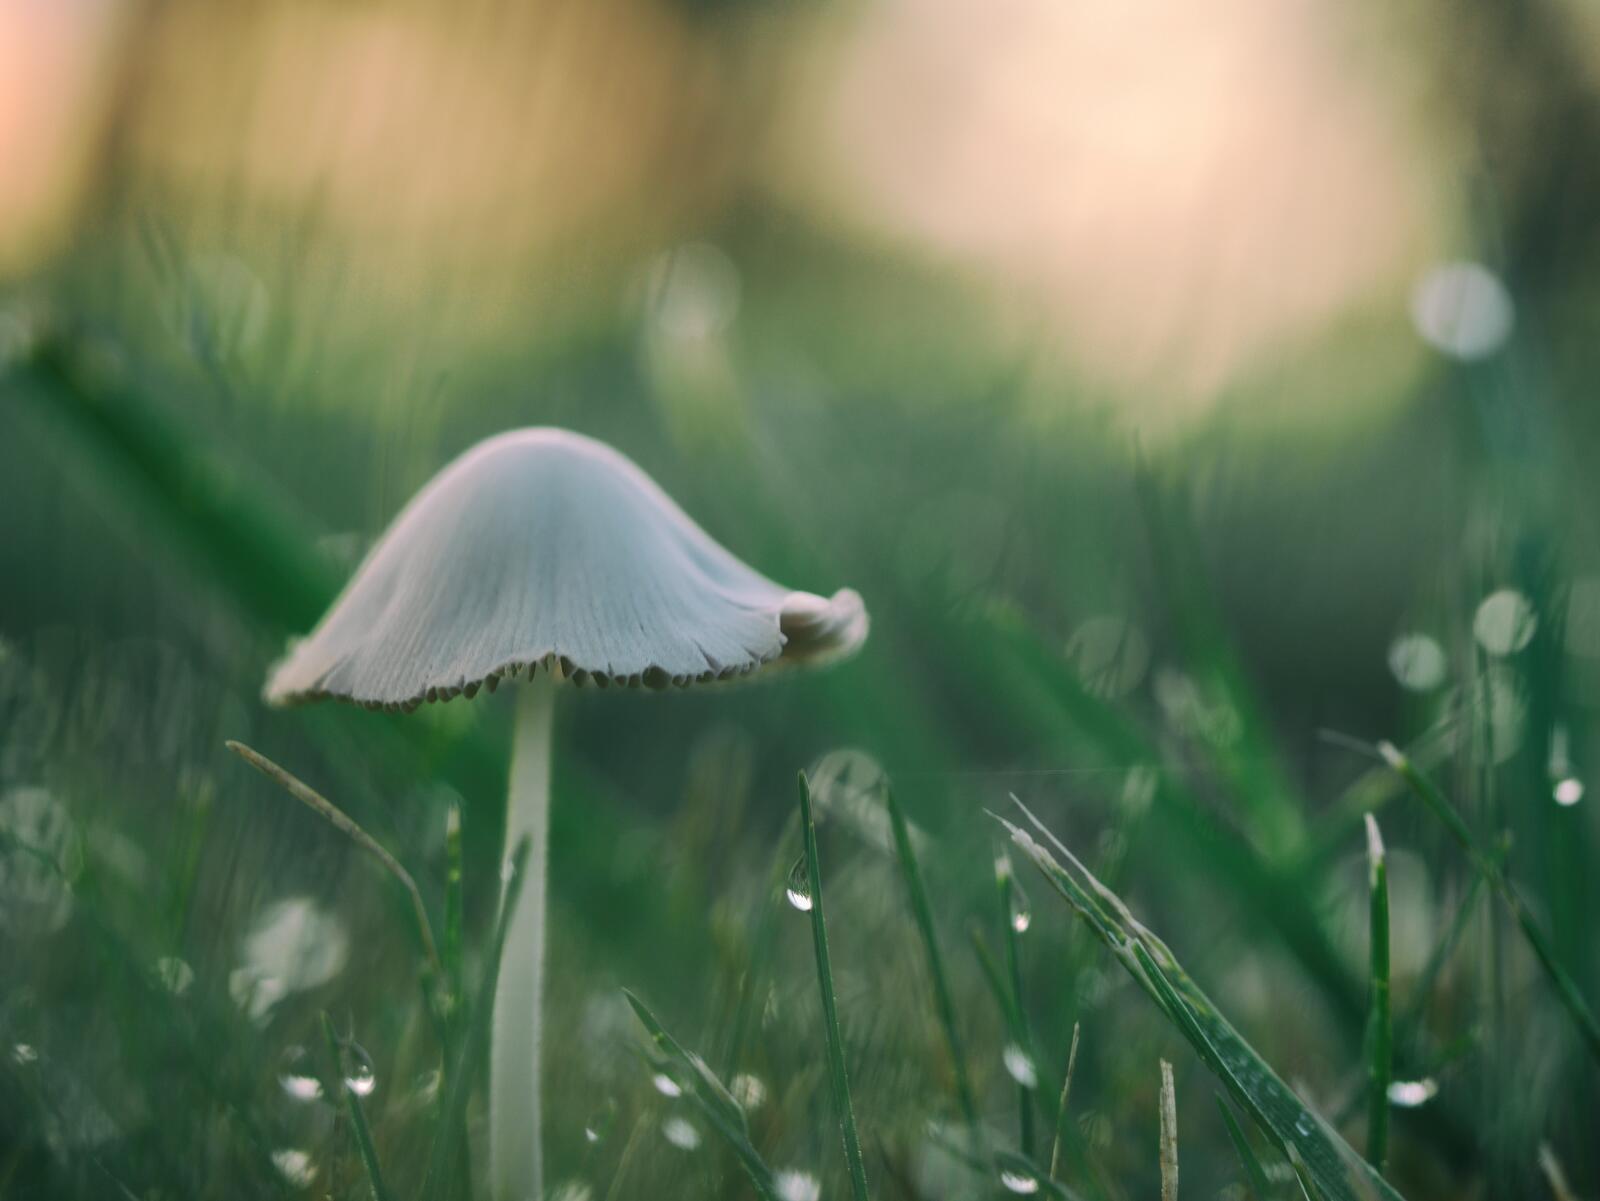 Картинка с грибом в зеленой траве